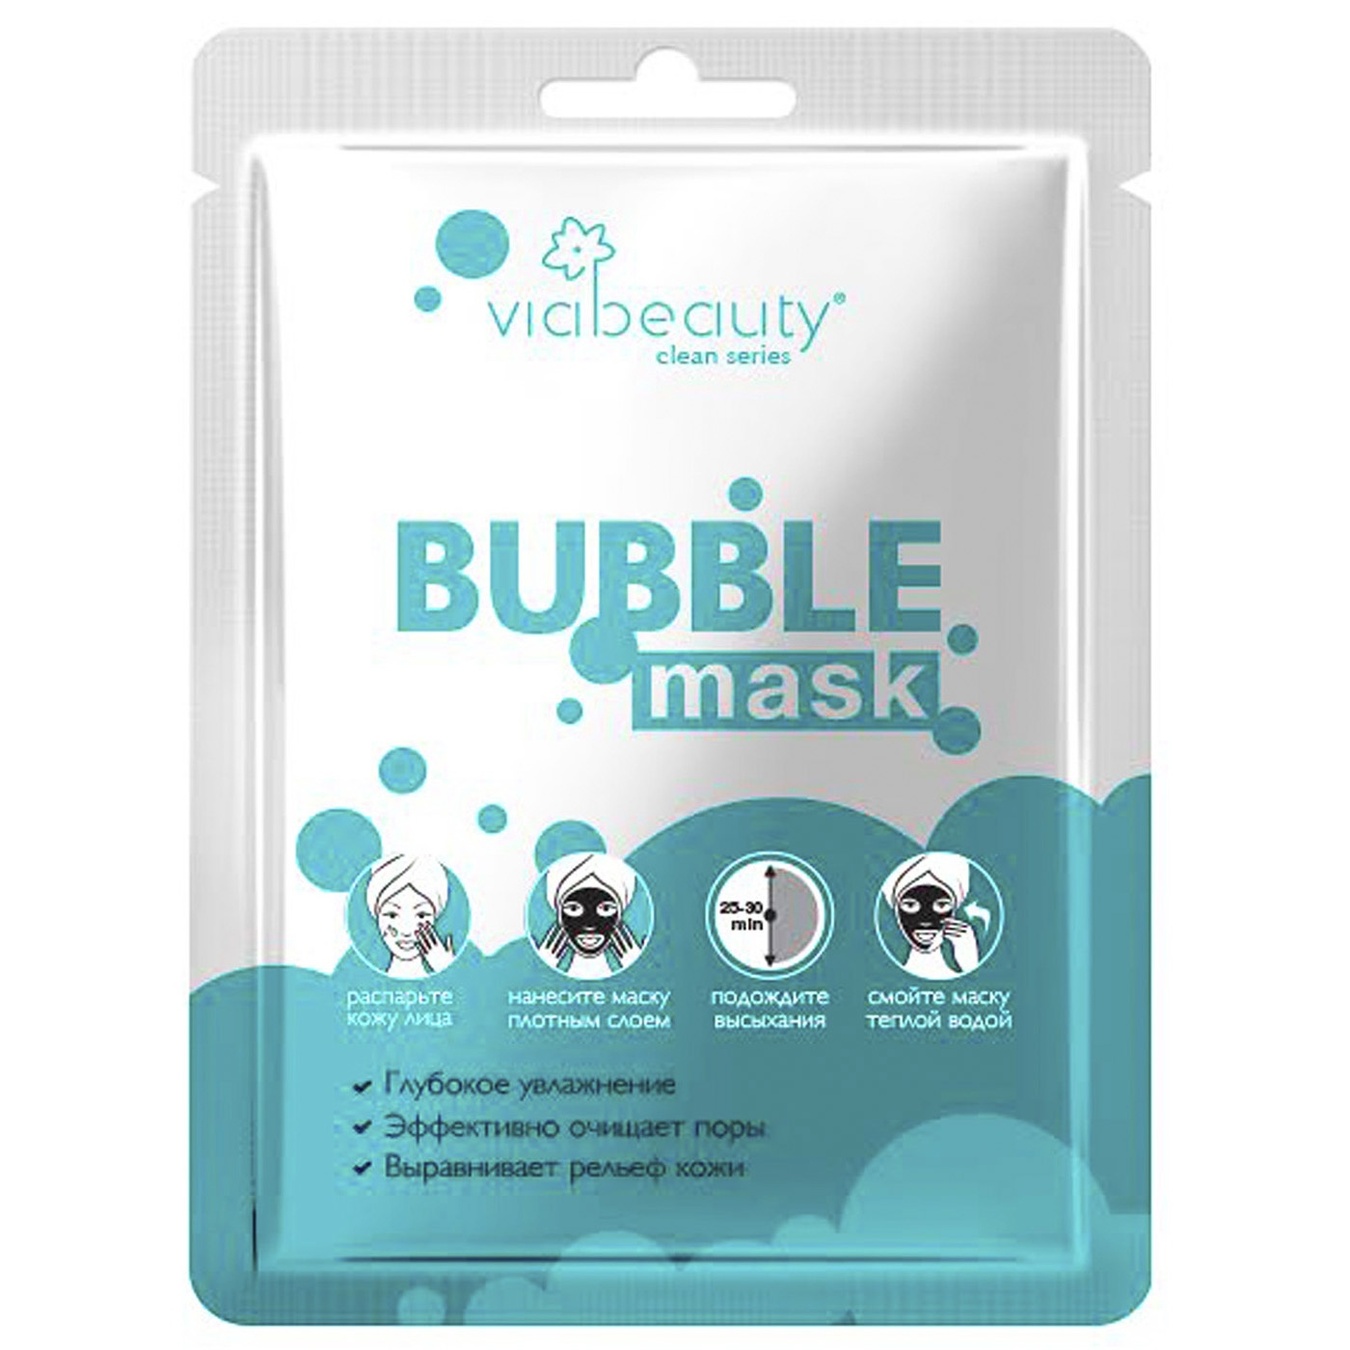 Маска для лица VIABEAUTY очищающая bubble mask с гиалуроновой кислотой